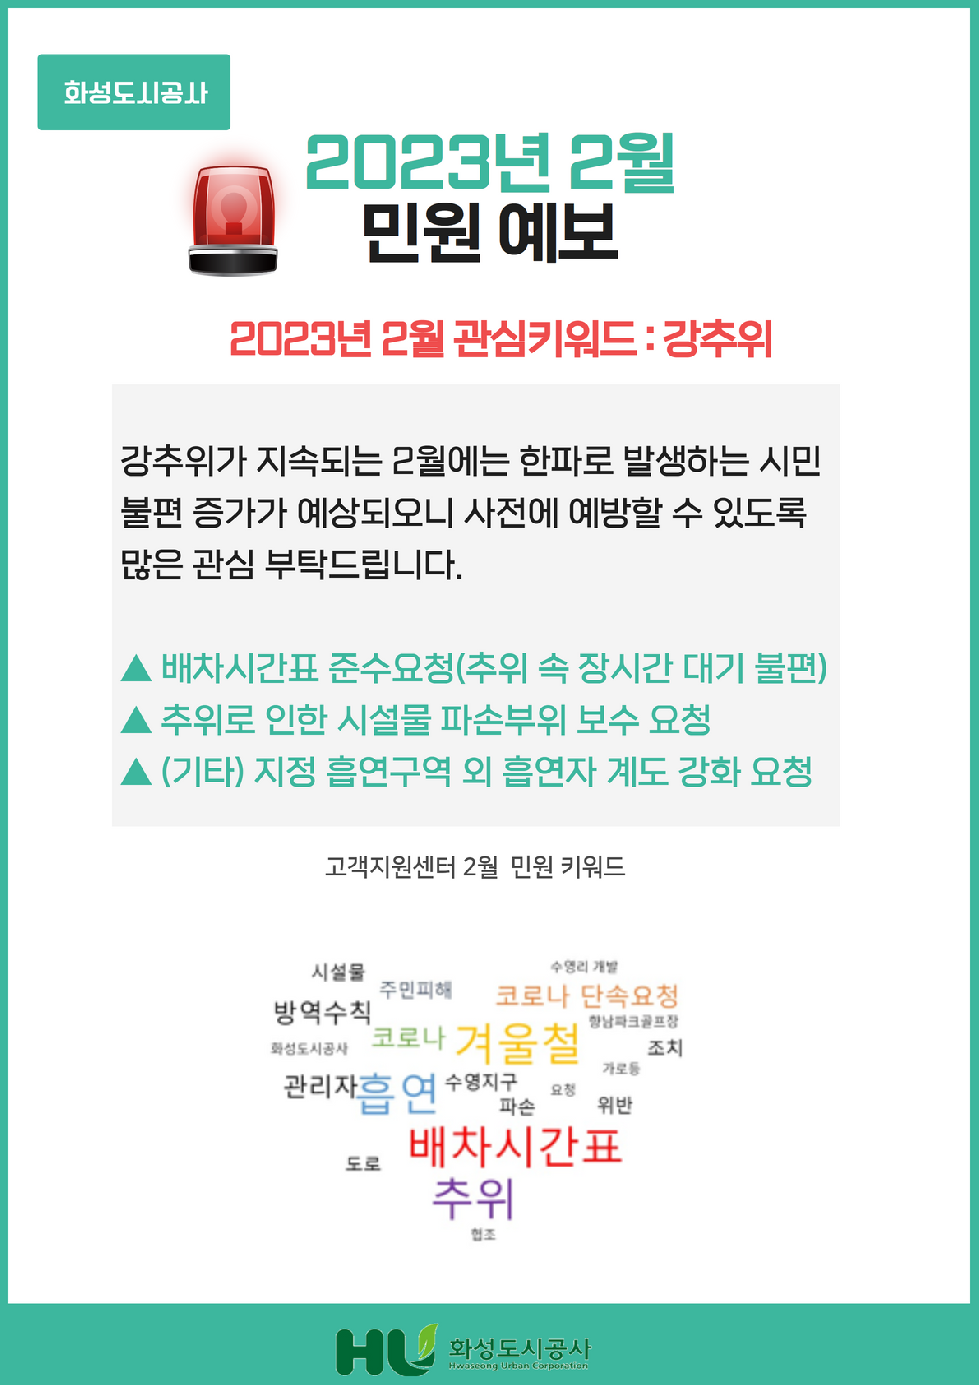 화성도시공사, ‘고객지원센터 민원 예보’발령